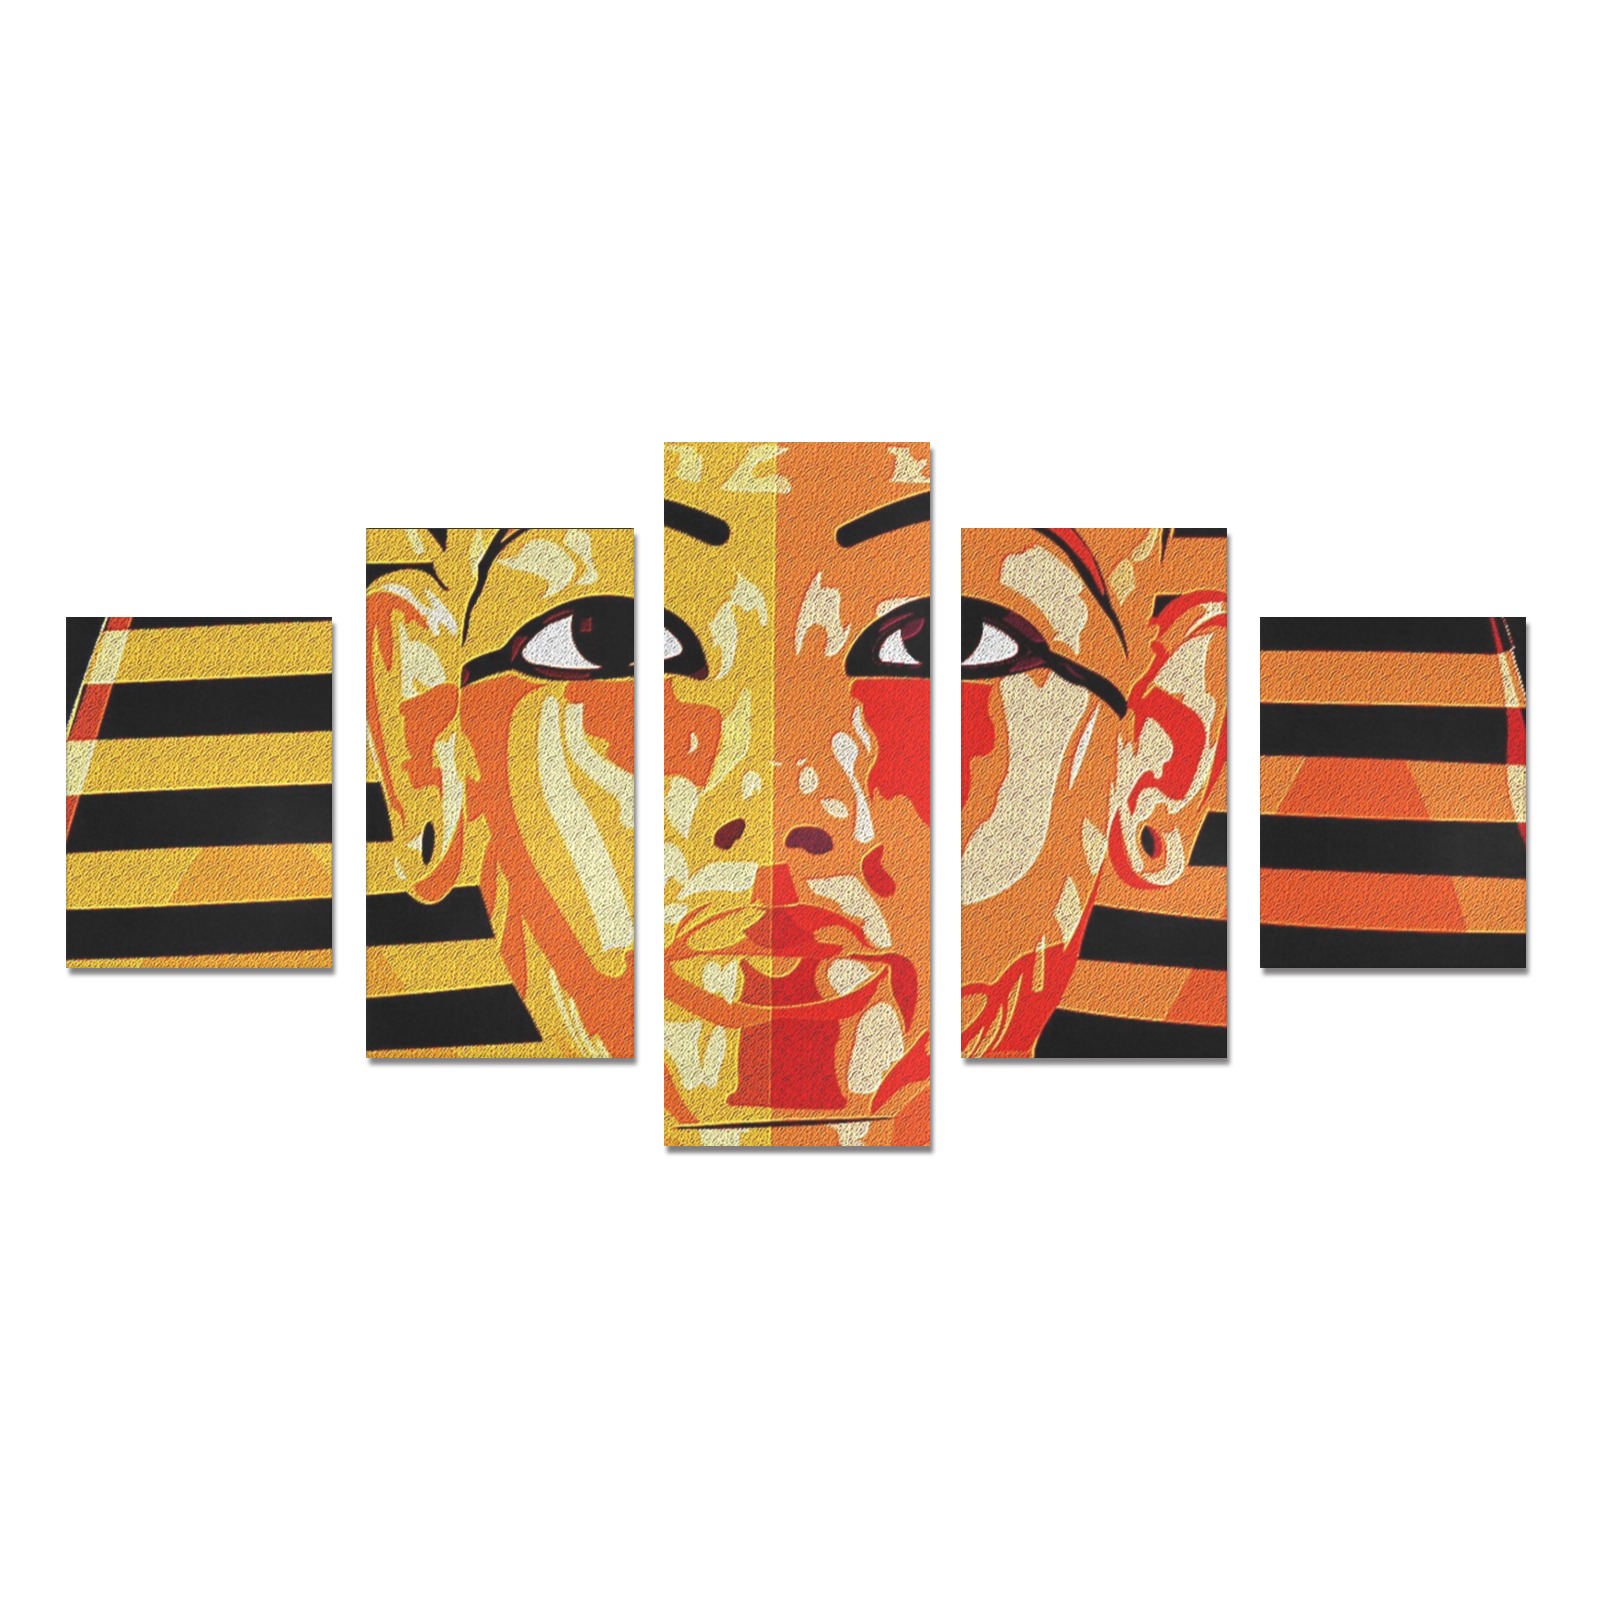 GOLDEN SLUMBER-KING TUT 2 Canvas Print Sets B (No Frame)